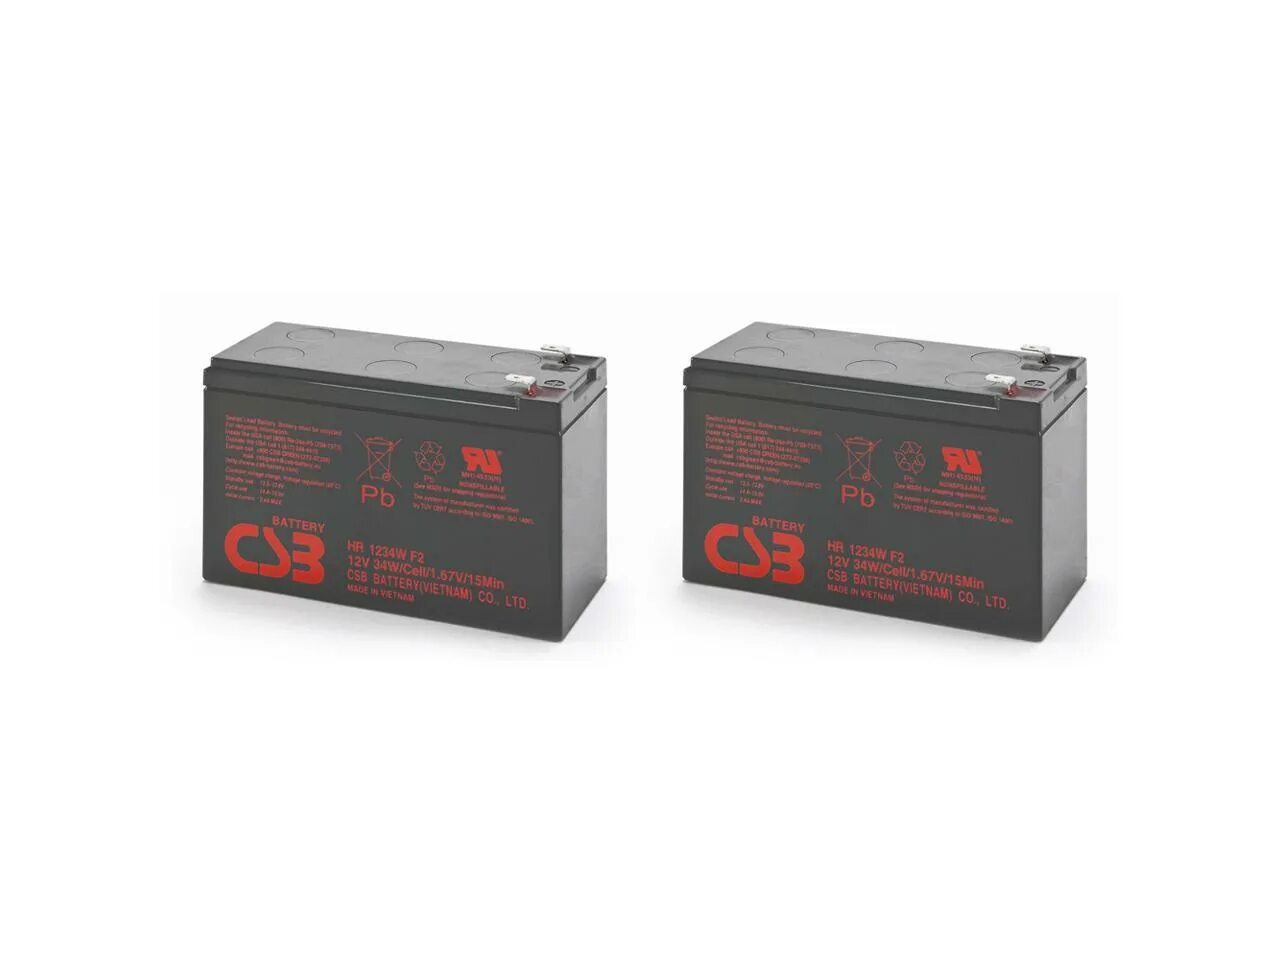 Батарея аккумуляторная CSB hr1234wf2 (12v,34w). Аккумуляторная батарея CSB hr1234w CSB Energy Technology. CSB HR 1234w f2. Аккумуляторная батарея 12v 9ah CSB HR 1234w (cp1290 f2).